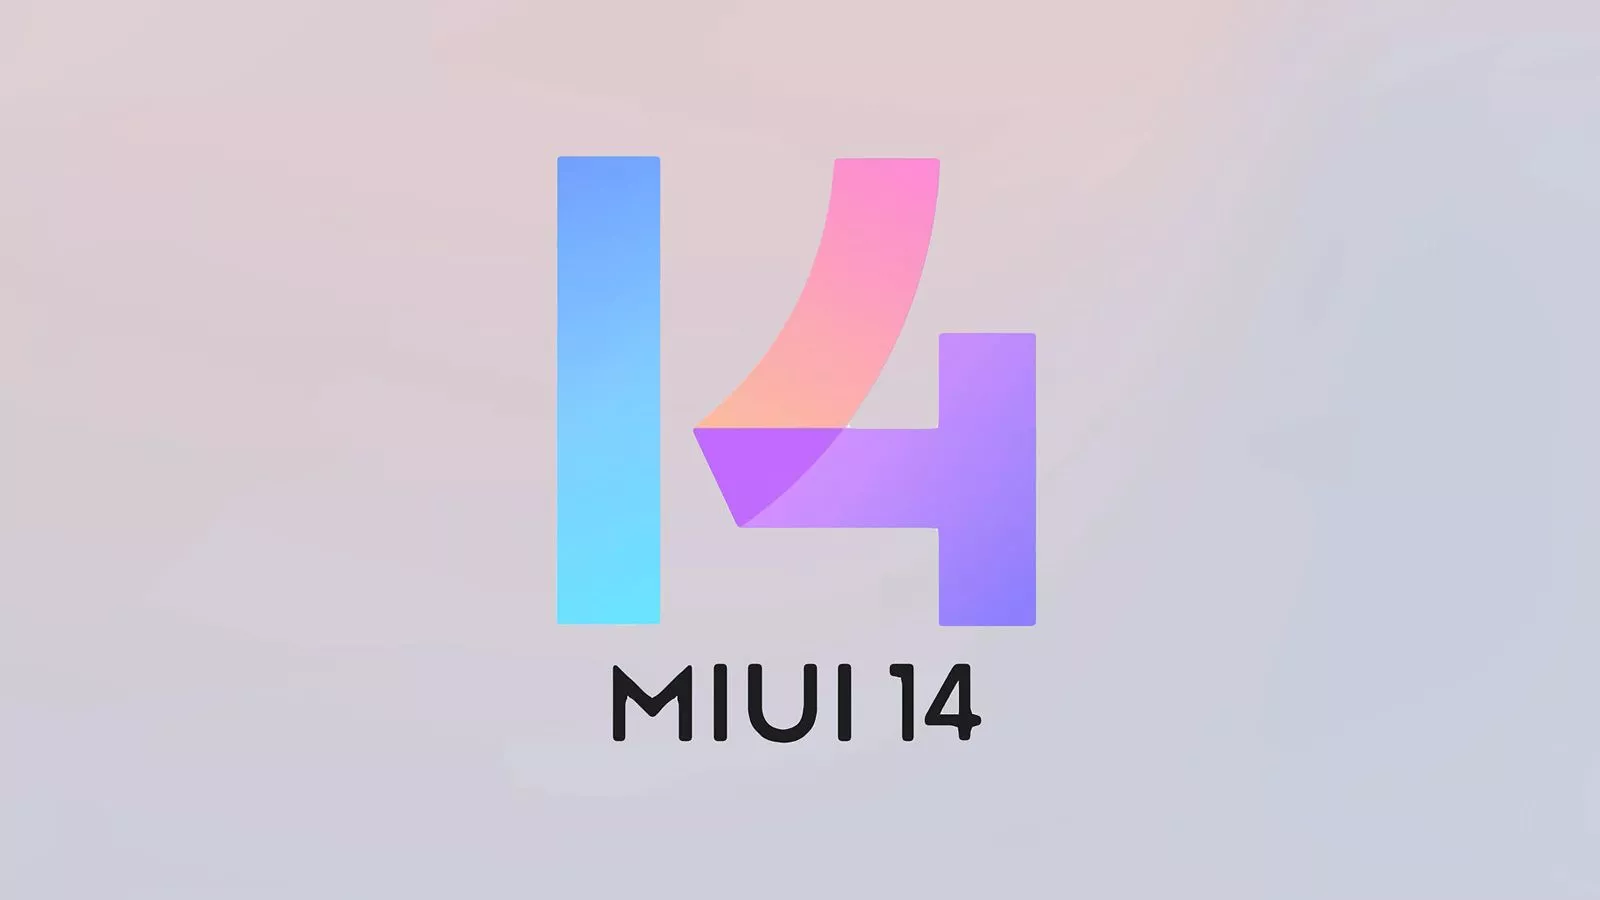 18 Xiaomi-Smartphones erhalten bis Ende März eine stabile MIUI 14-Firmware - offizielle Liste veröffentlicht